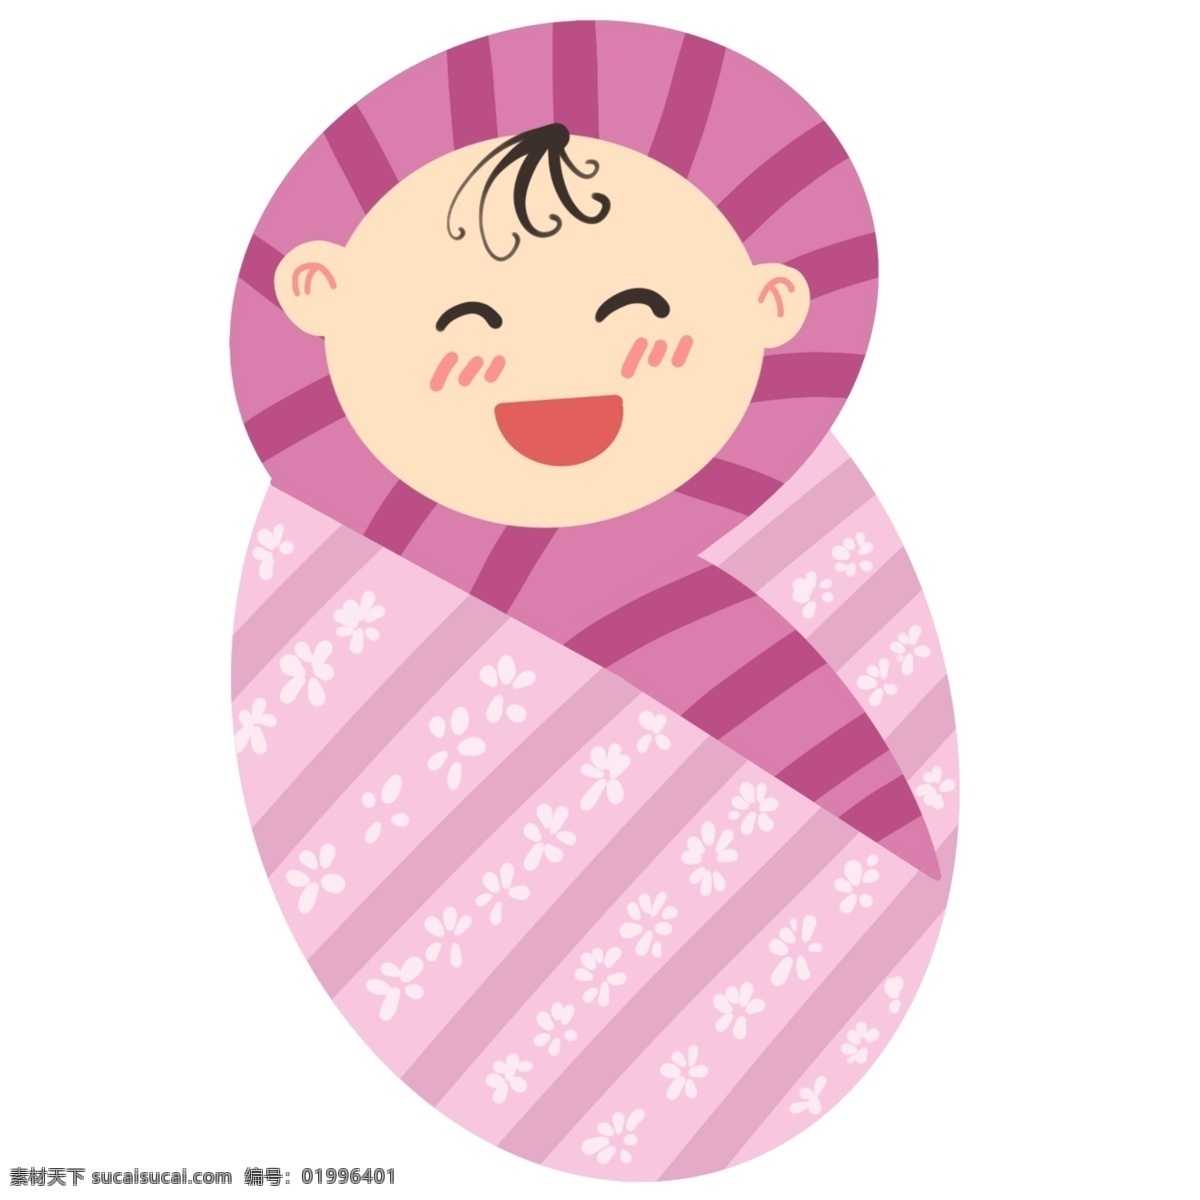 可爱 婴儿 装饰 插画 可爱的婴儿 漂亮的婴儿 婴儿装饰 婴儿插画 粉色的包被 睡觉的婴儿 卡通人物